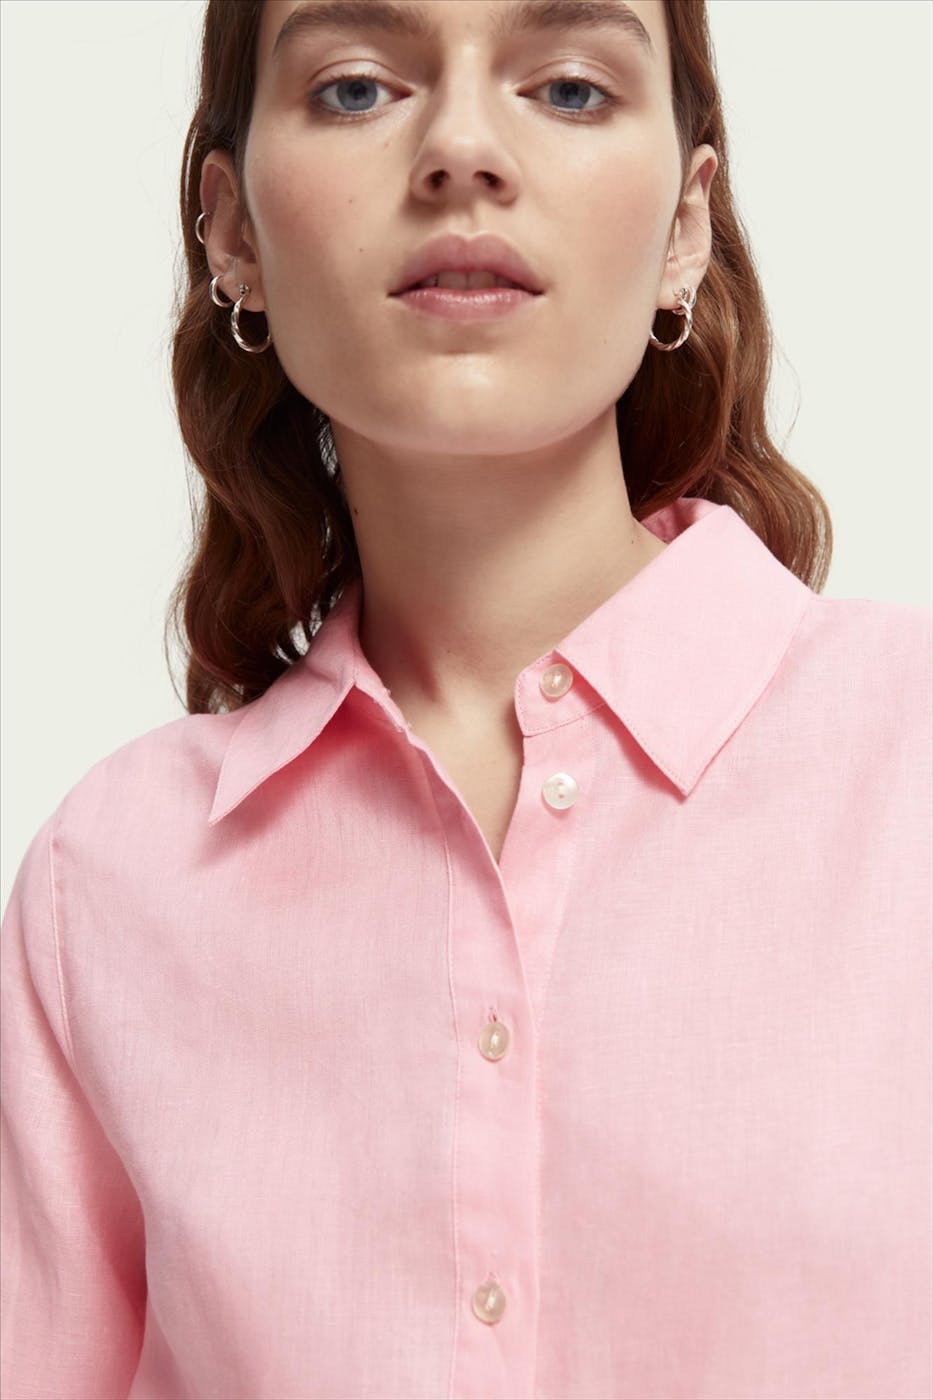 Scotch & Soda - Roze Sun Seekers blouse